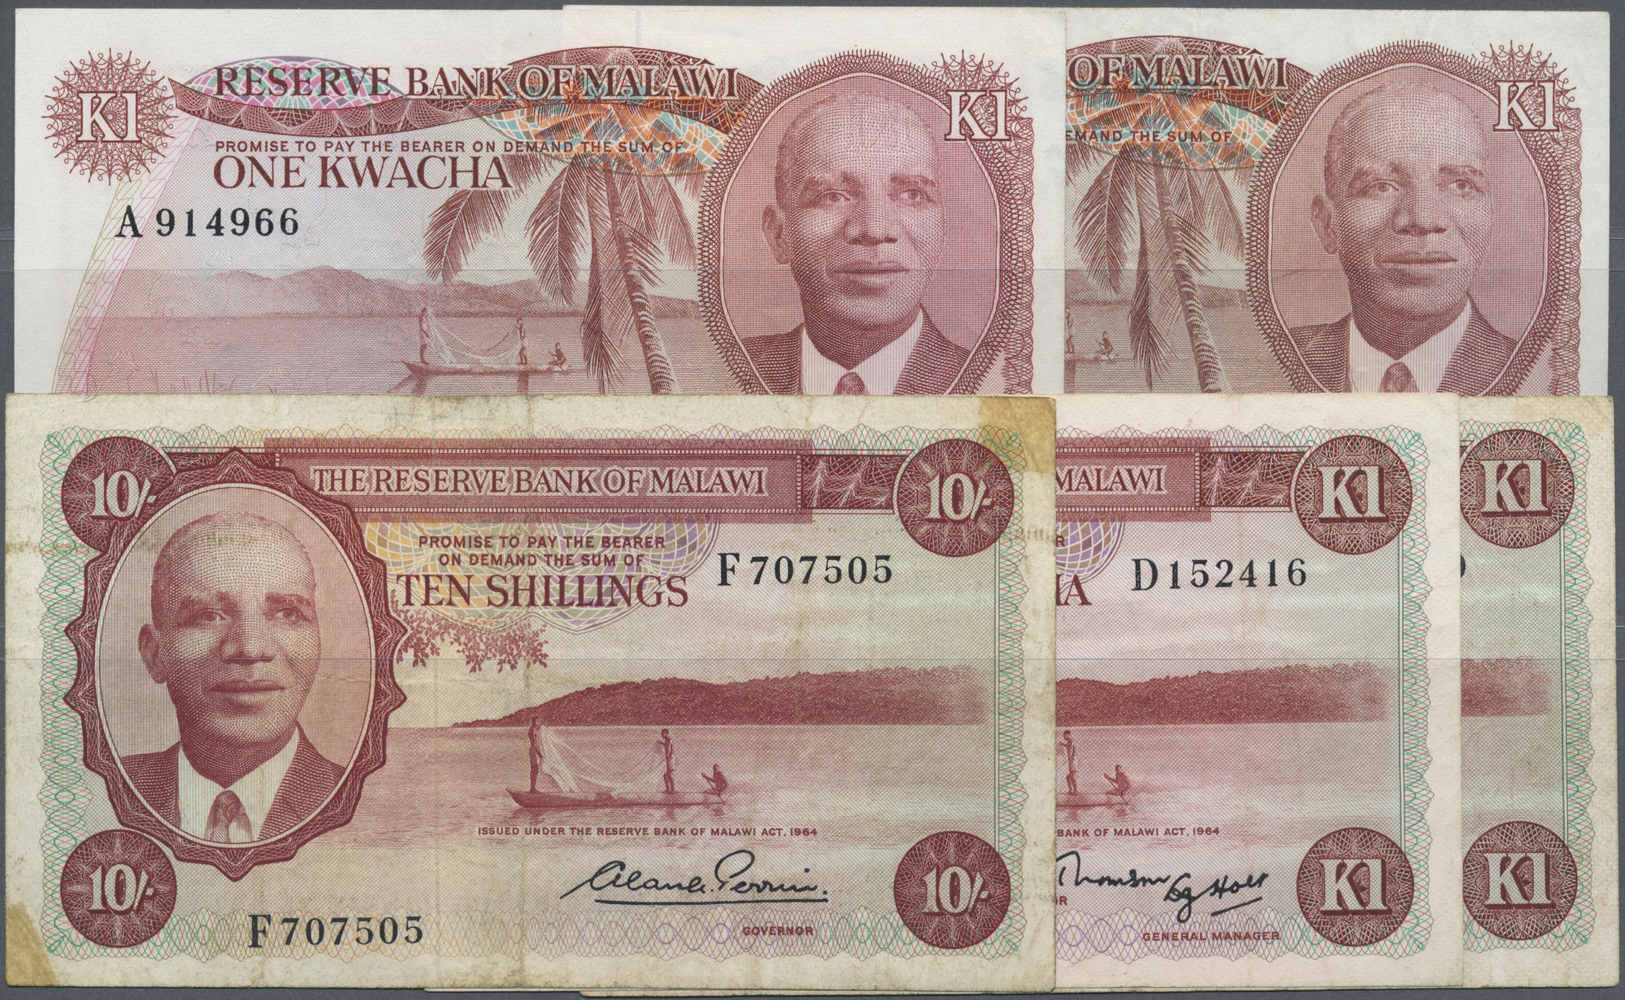 01632 Malawi: Set Of 5 Notes Containing 10 Shillings L.1964, 2x 1 Kwacha L.1964, 1 Kwacha 1974 And 1 Kwacha L. 1964, The - Malawi